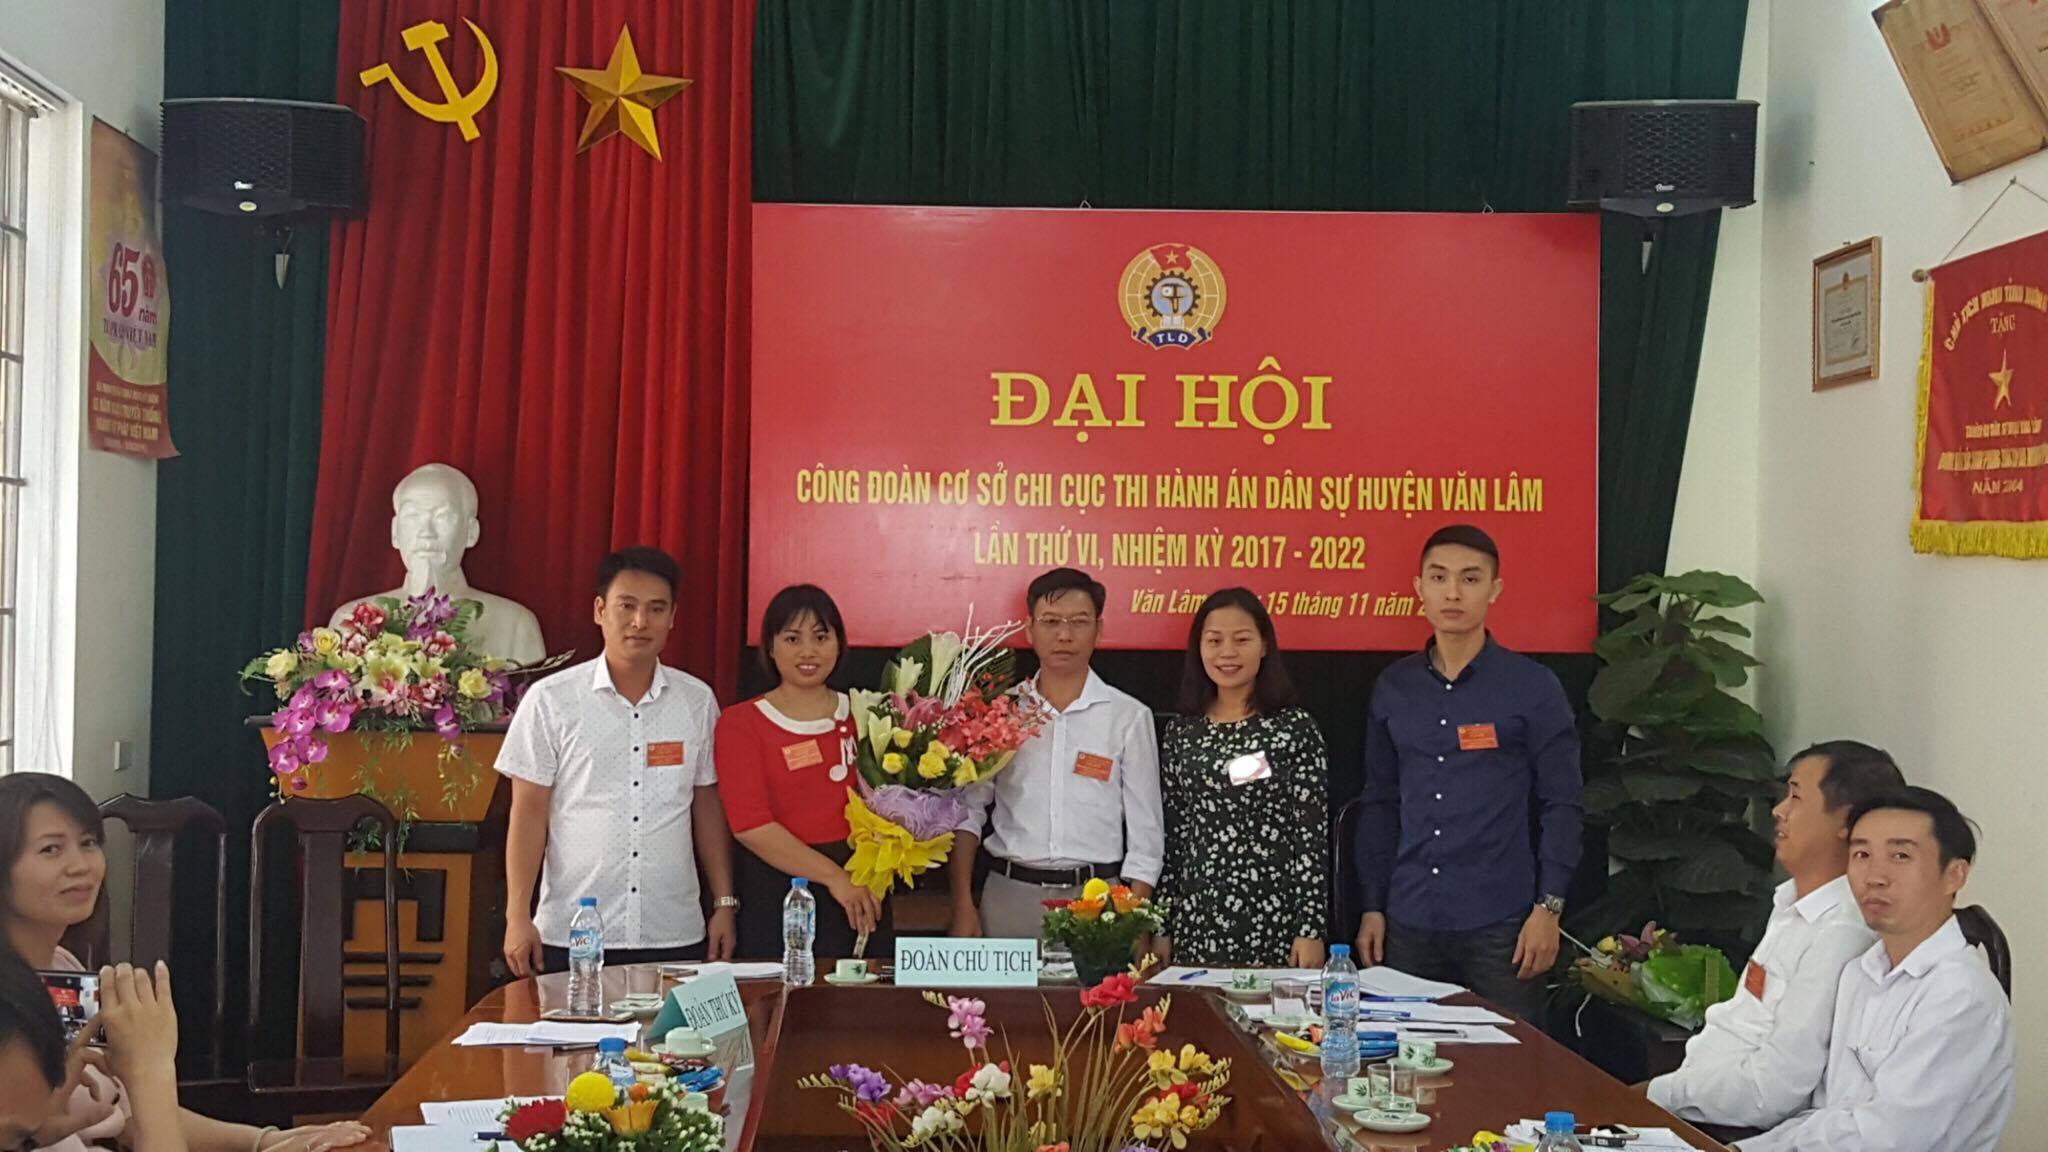 Đại hội Công Đoàn cơ sở Chi cục Thi hành án dân sự huyện Văn Lâm  lần thứ VI nhiệm kỳ 2017 – 2022